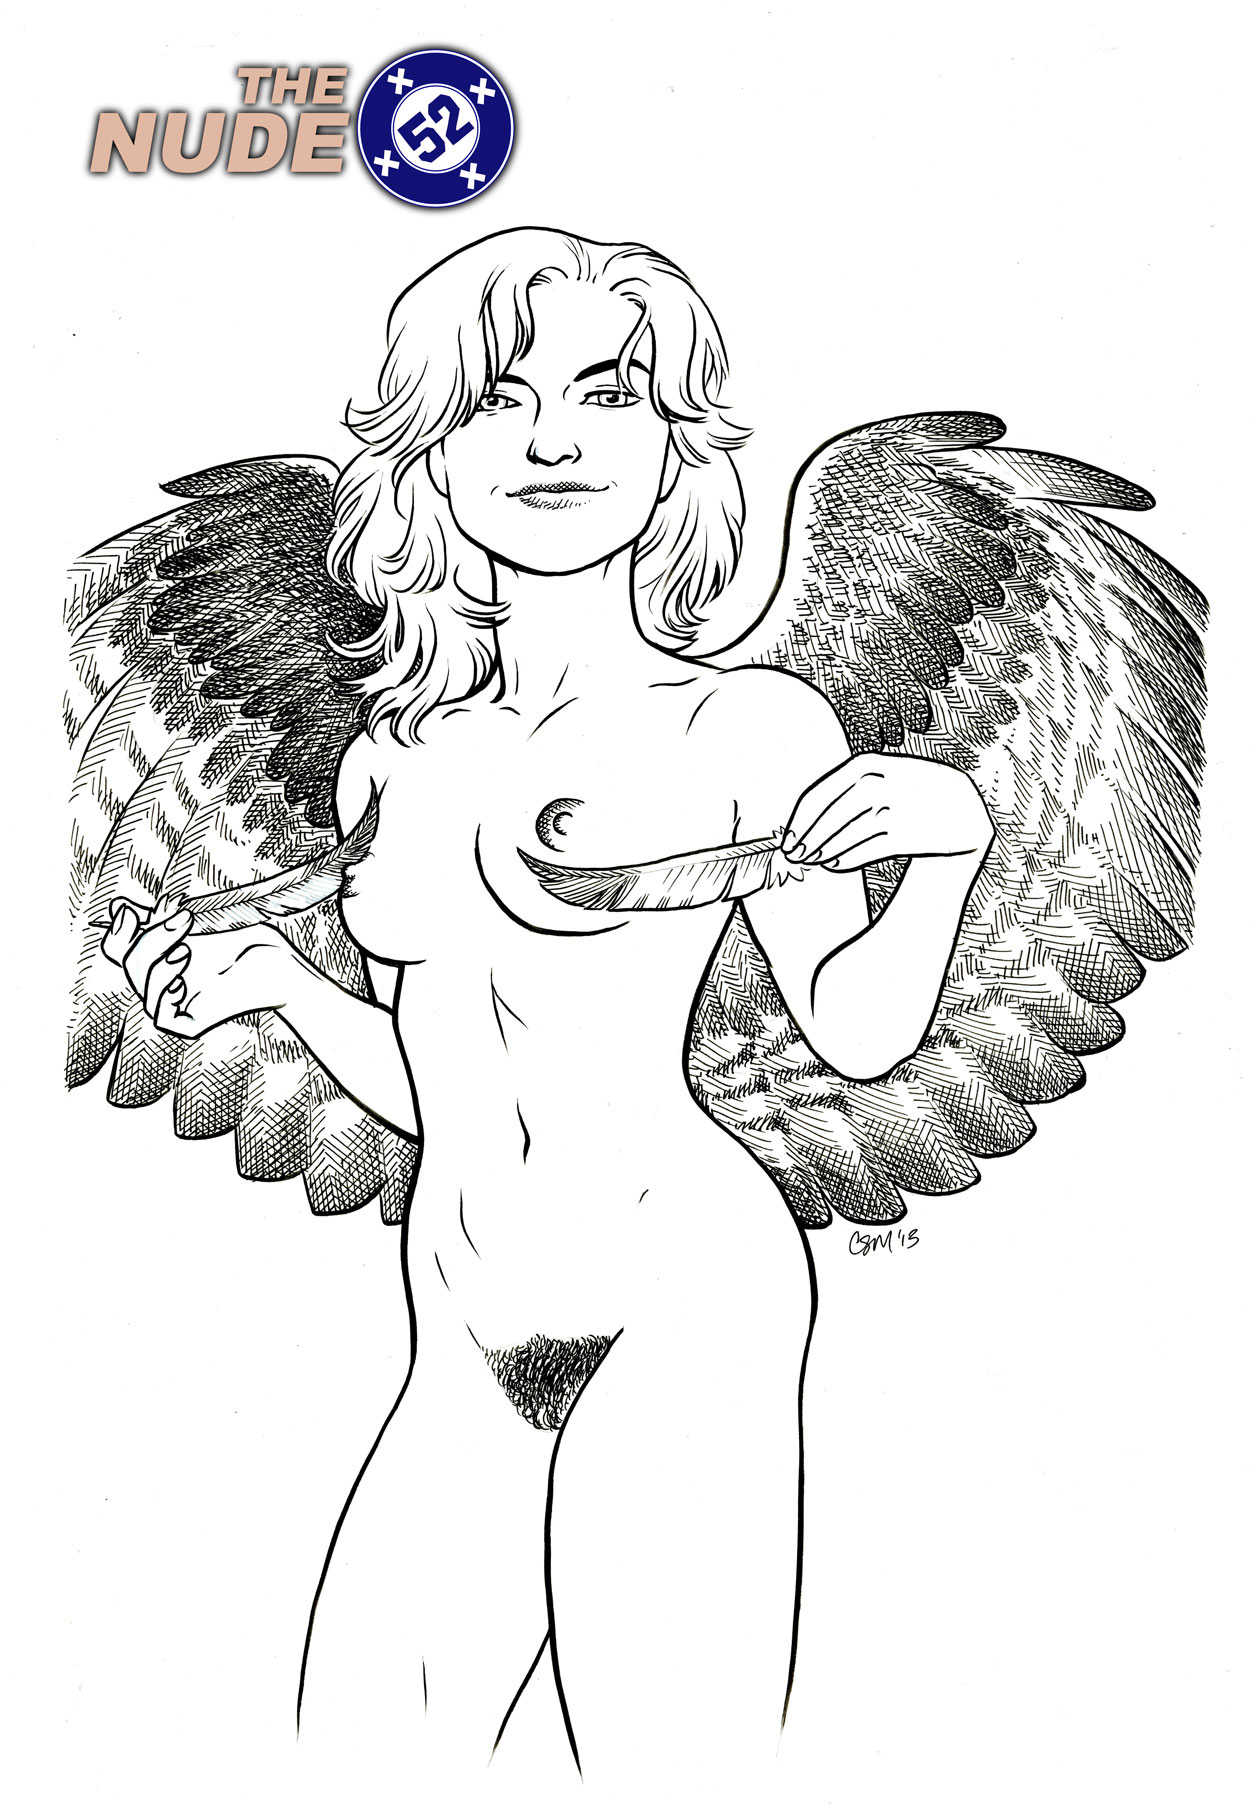 Nude52-Hawkgirl